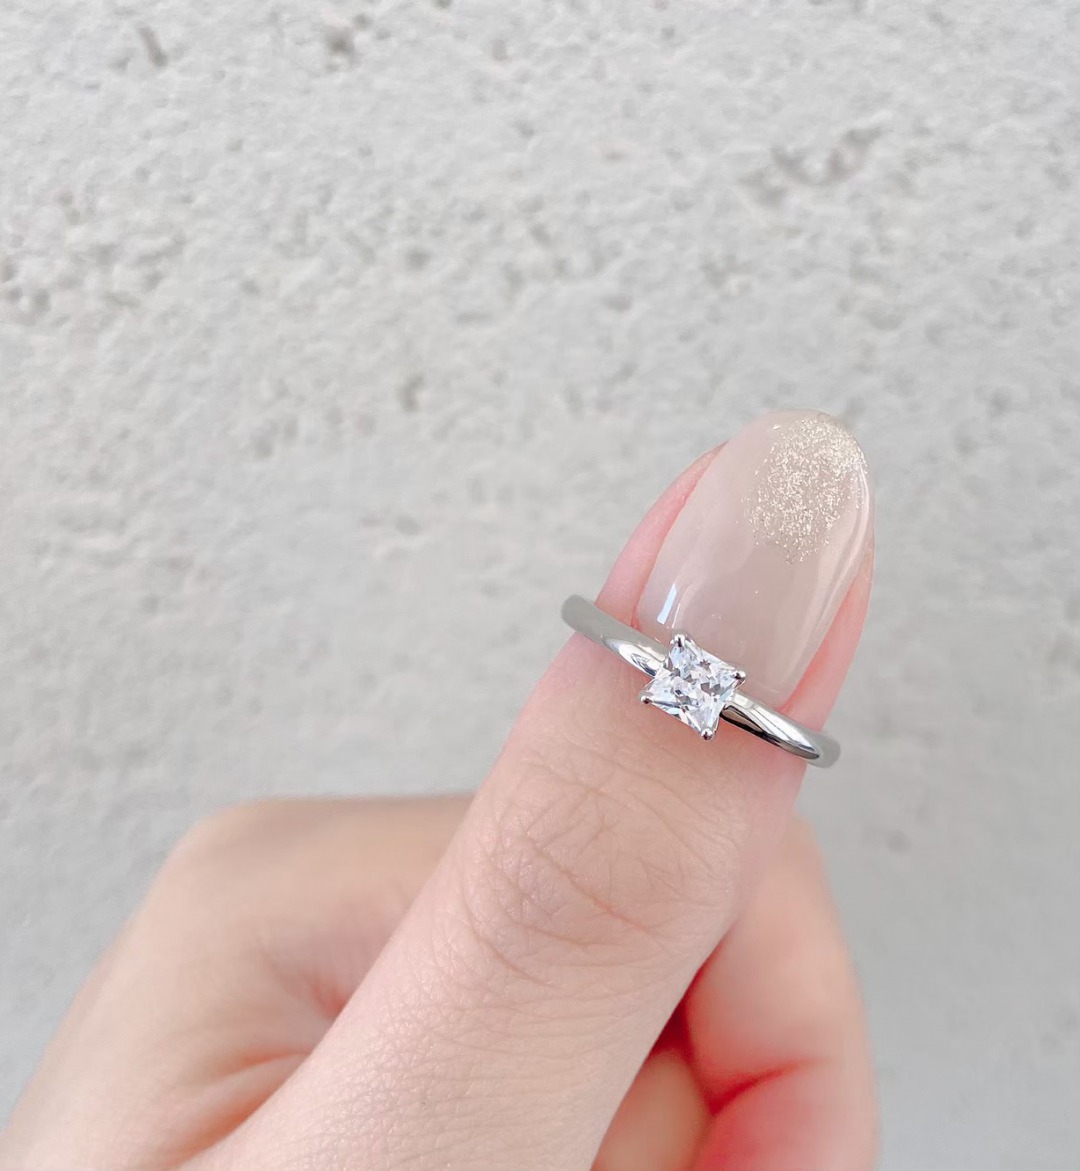 銀座で人気のシンプルで可愛い婚約指輪